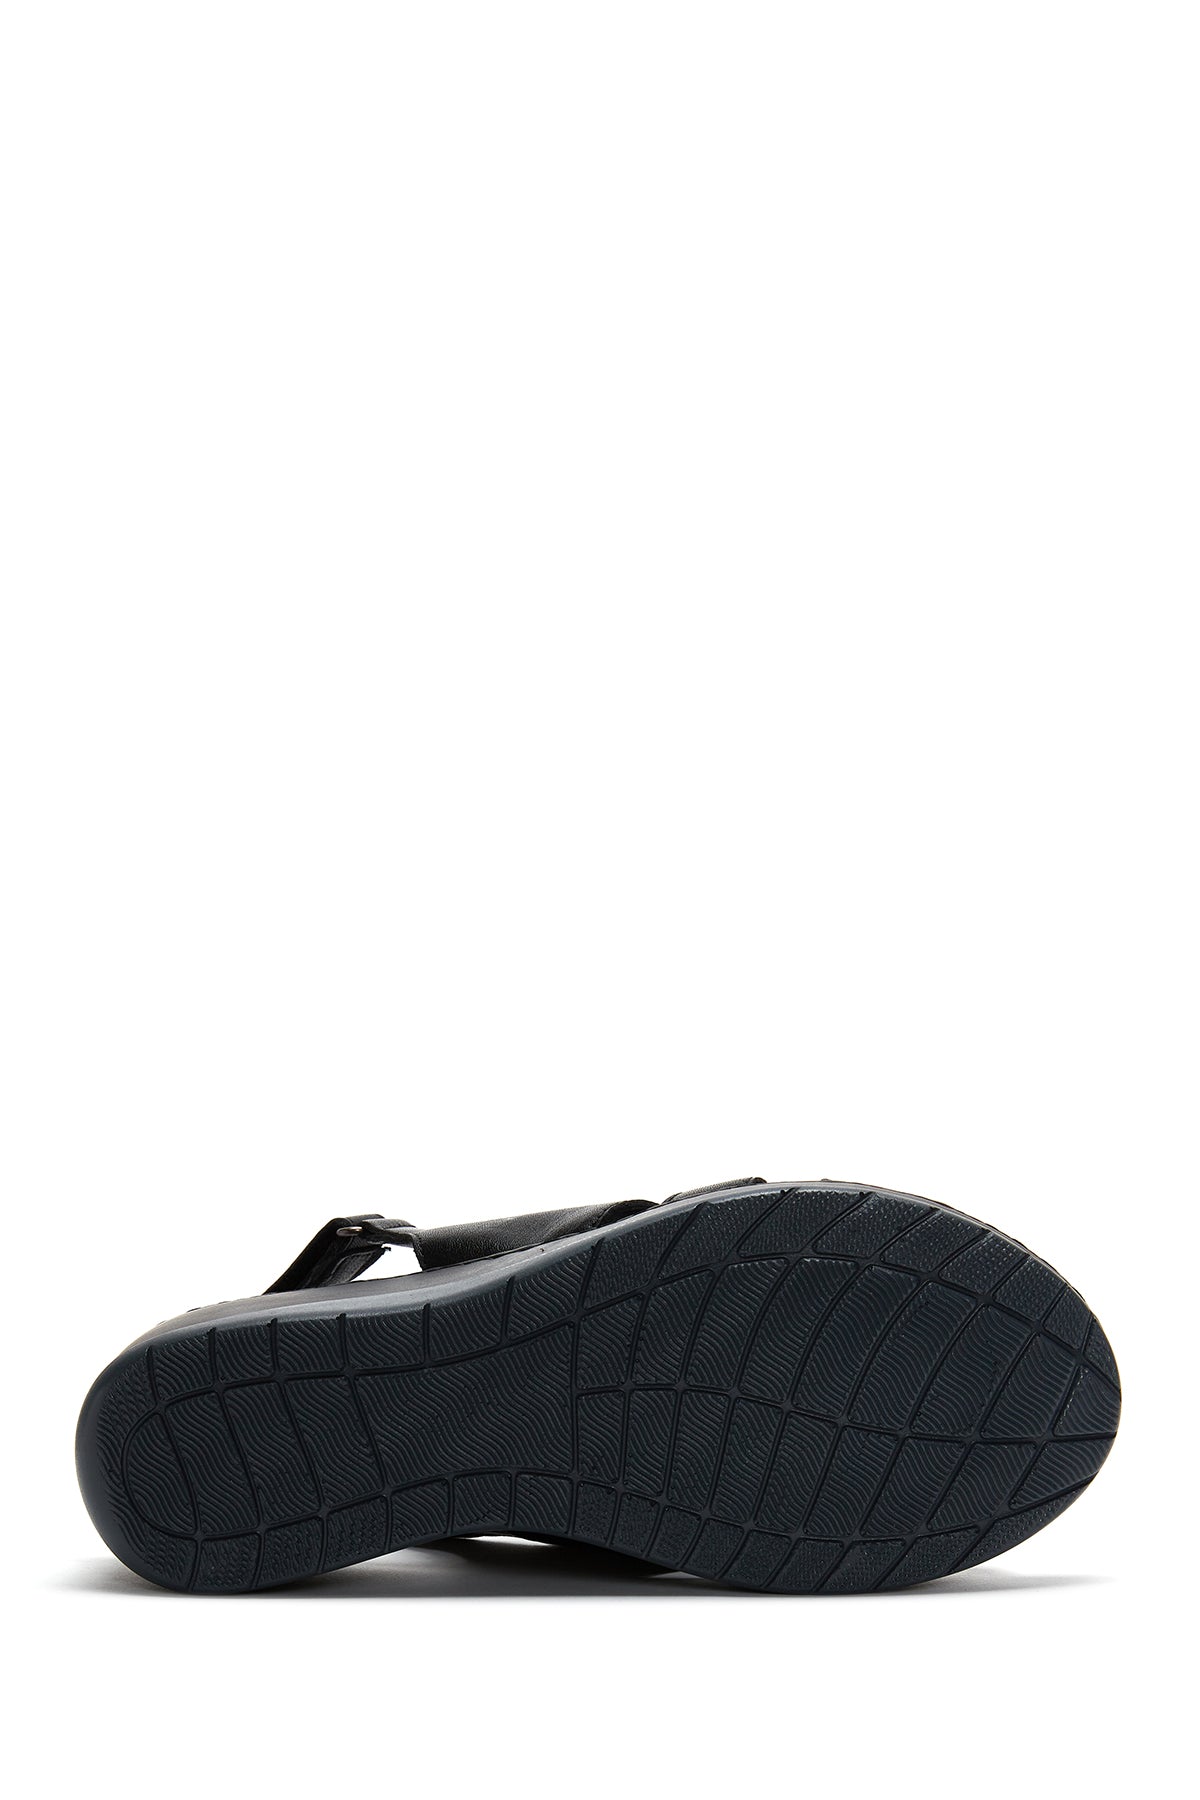 Kadın Siyah Deri Dolgu Topuk Comfort Sandalet